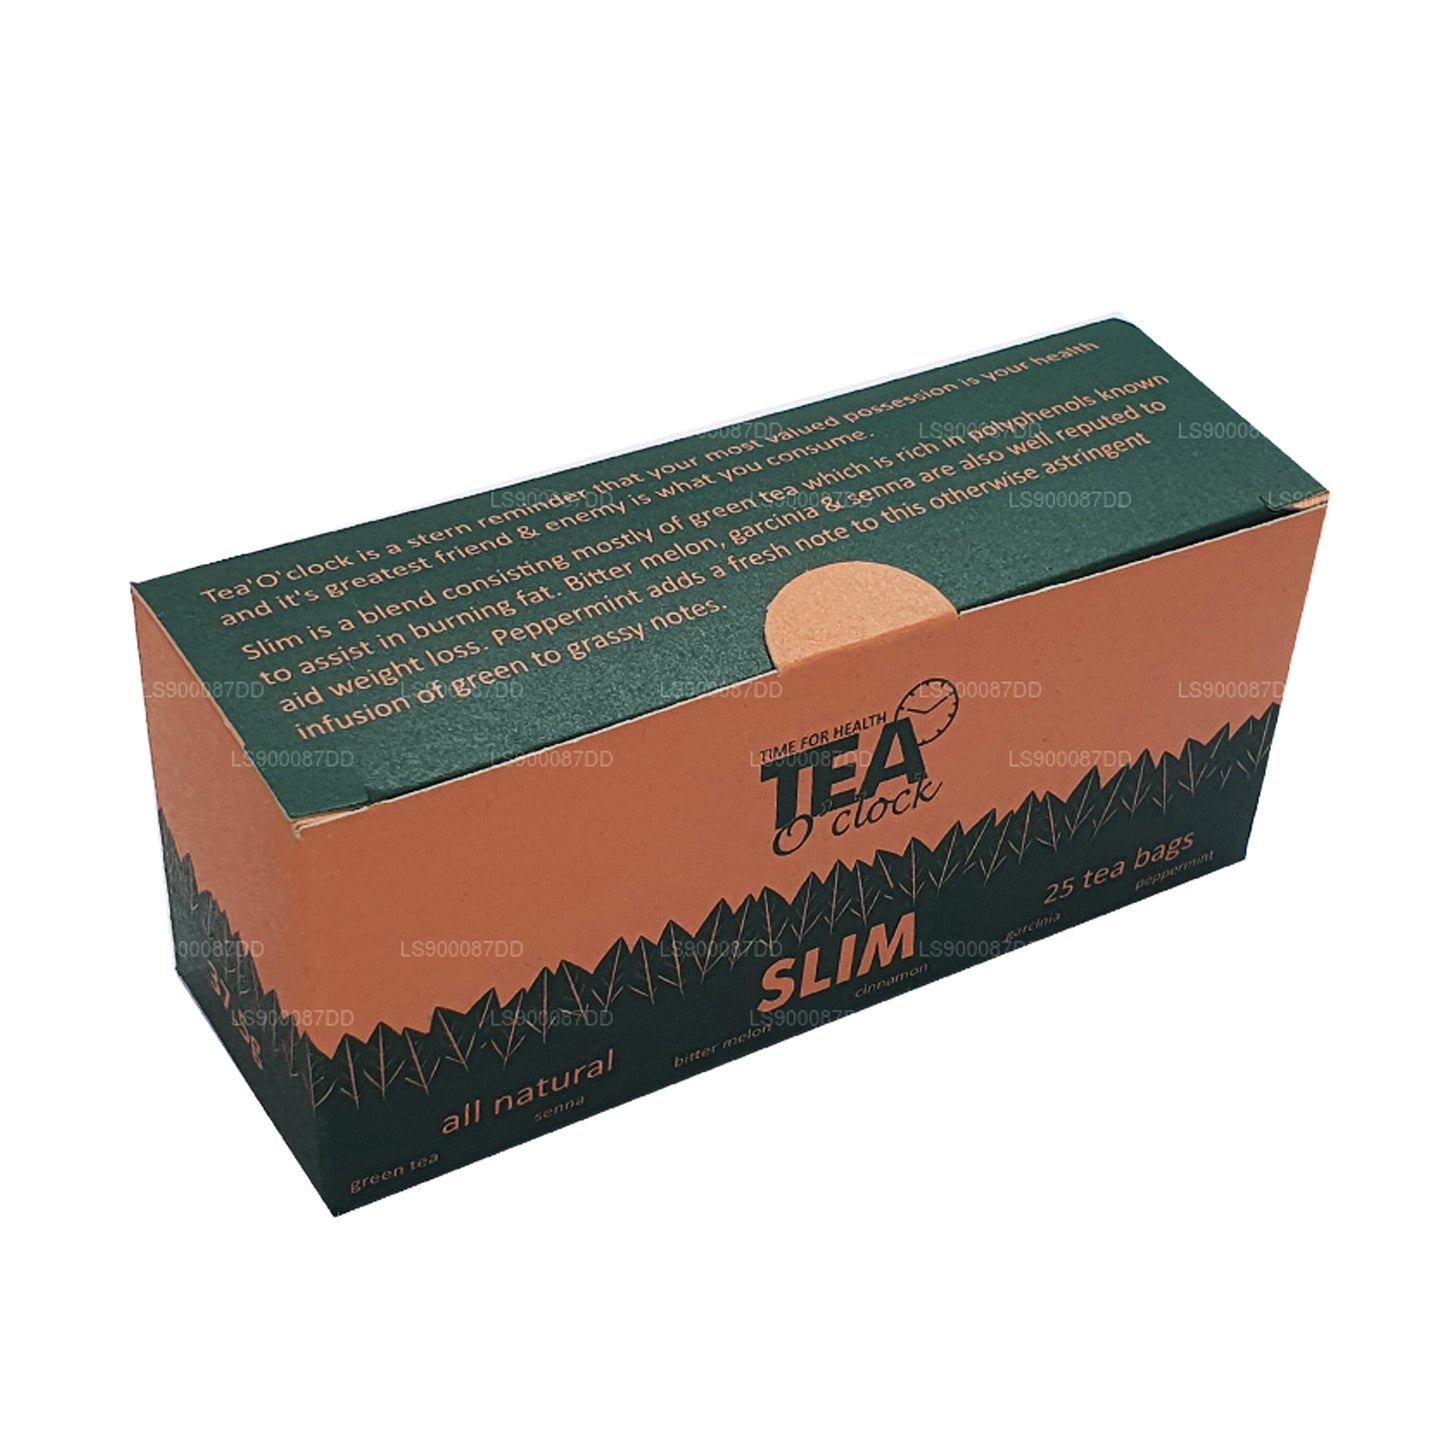 Lakpura Slim Tea (37g) 25 Tea Bags